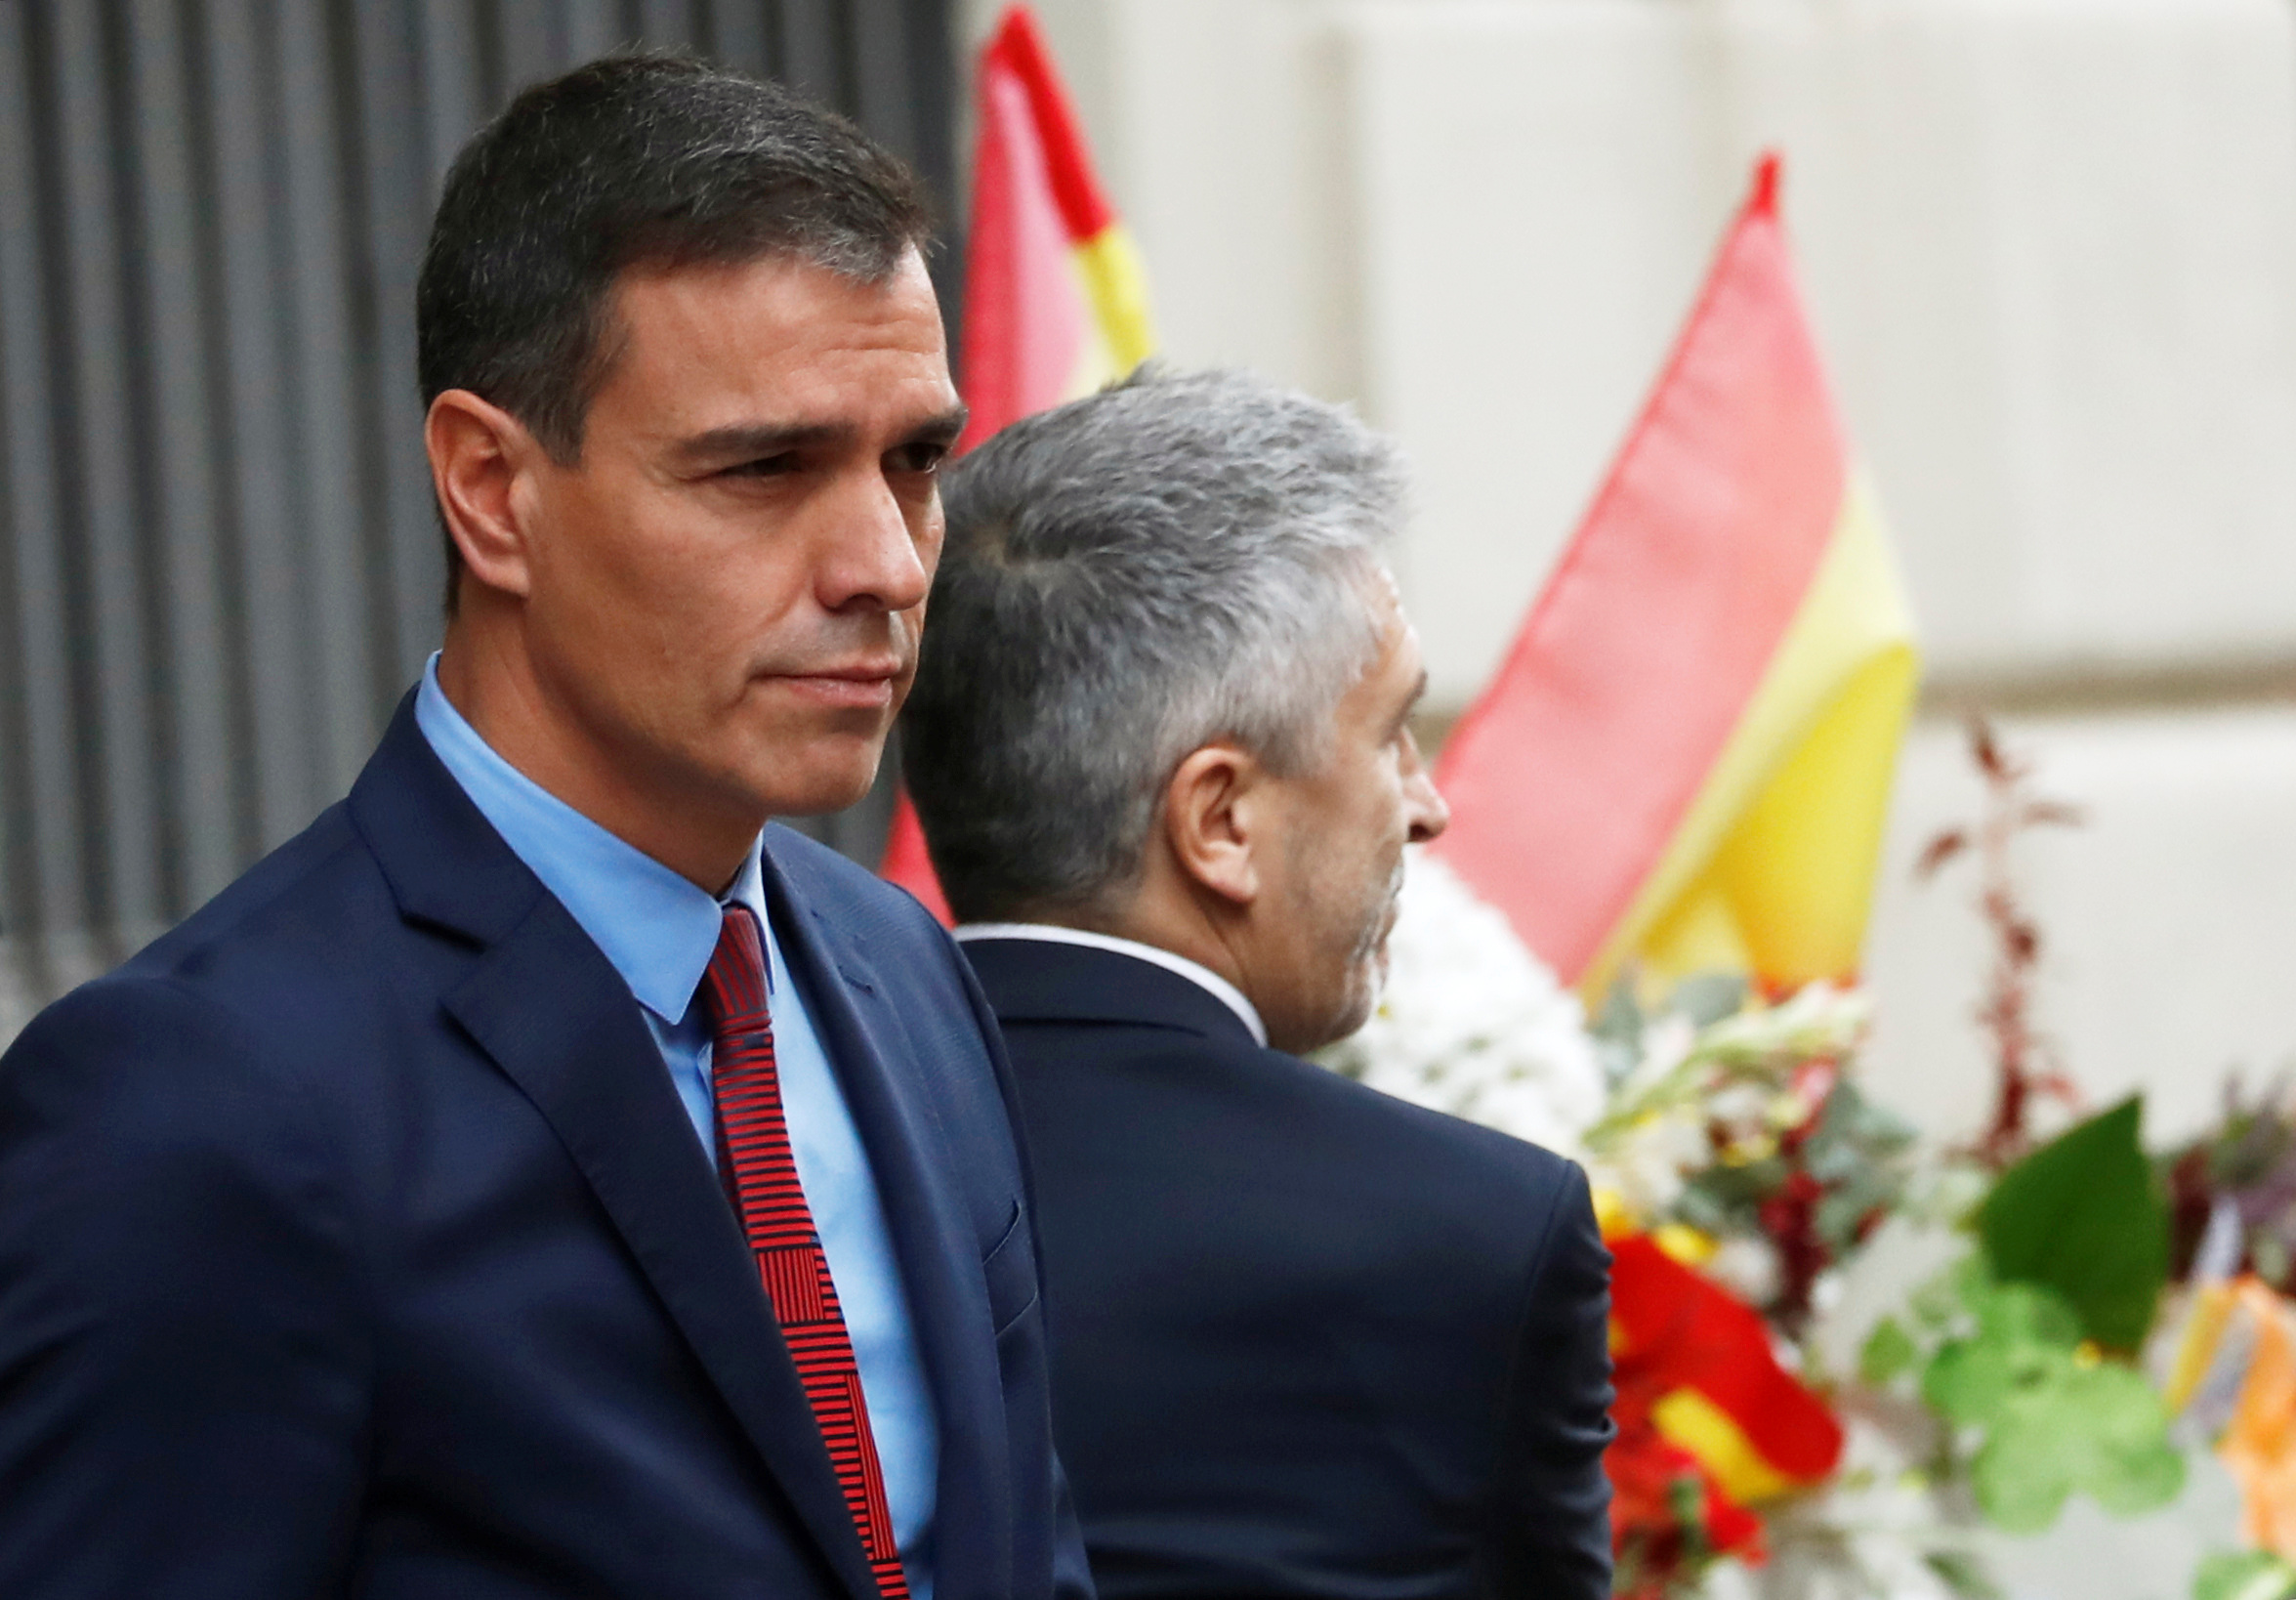 Στη Βαρκελώνη ο Σάντσεθ με σκληρές κατηγορίες κατά του προέδρου της Καταλονίας